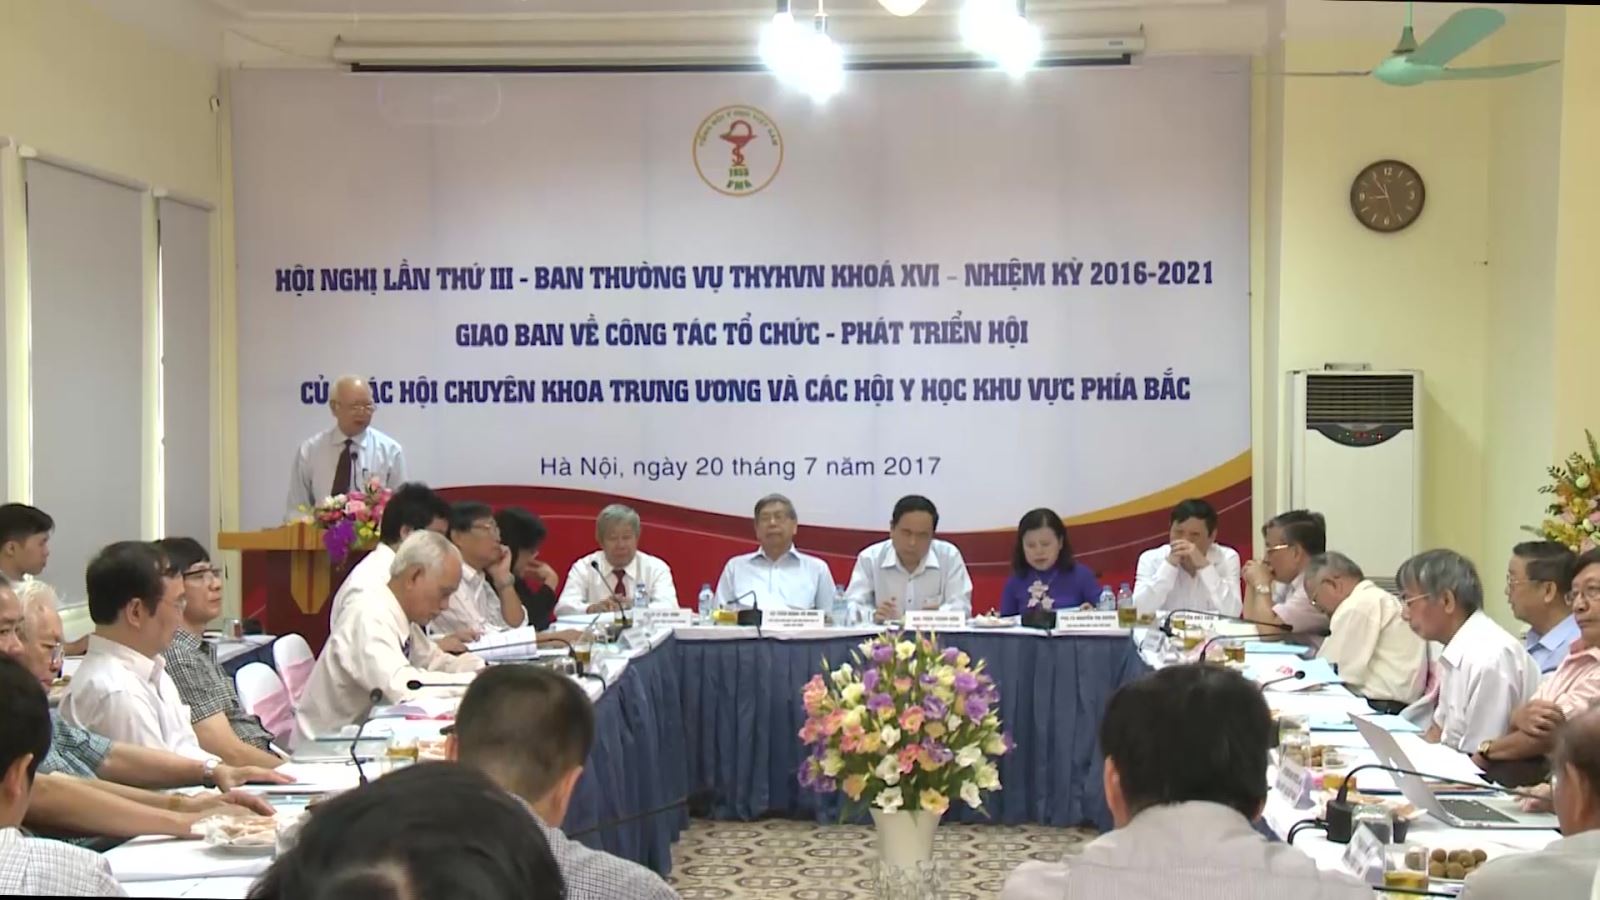 Hội nghị lần thứ 3 Ban thường vụ - Tổng hội y học Việt Nam